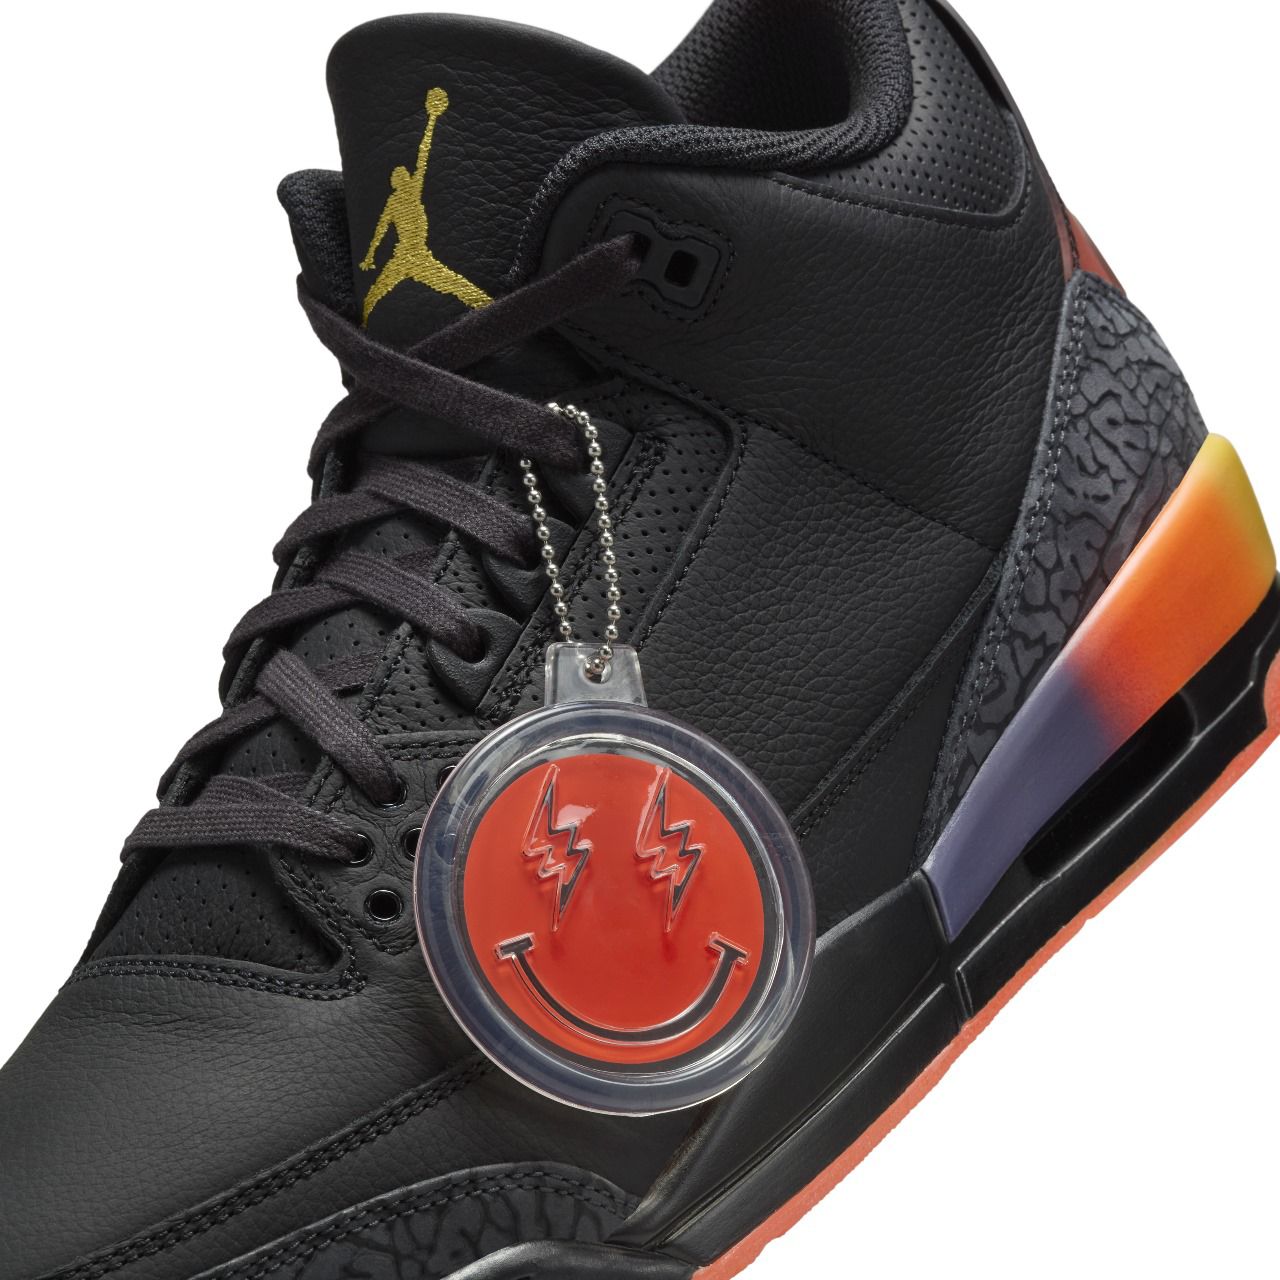 Air Jordan 3 x J Balvin Río, el nuevo drop que se tomará el mundo de los sneakers